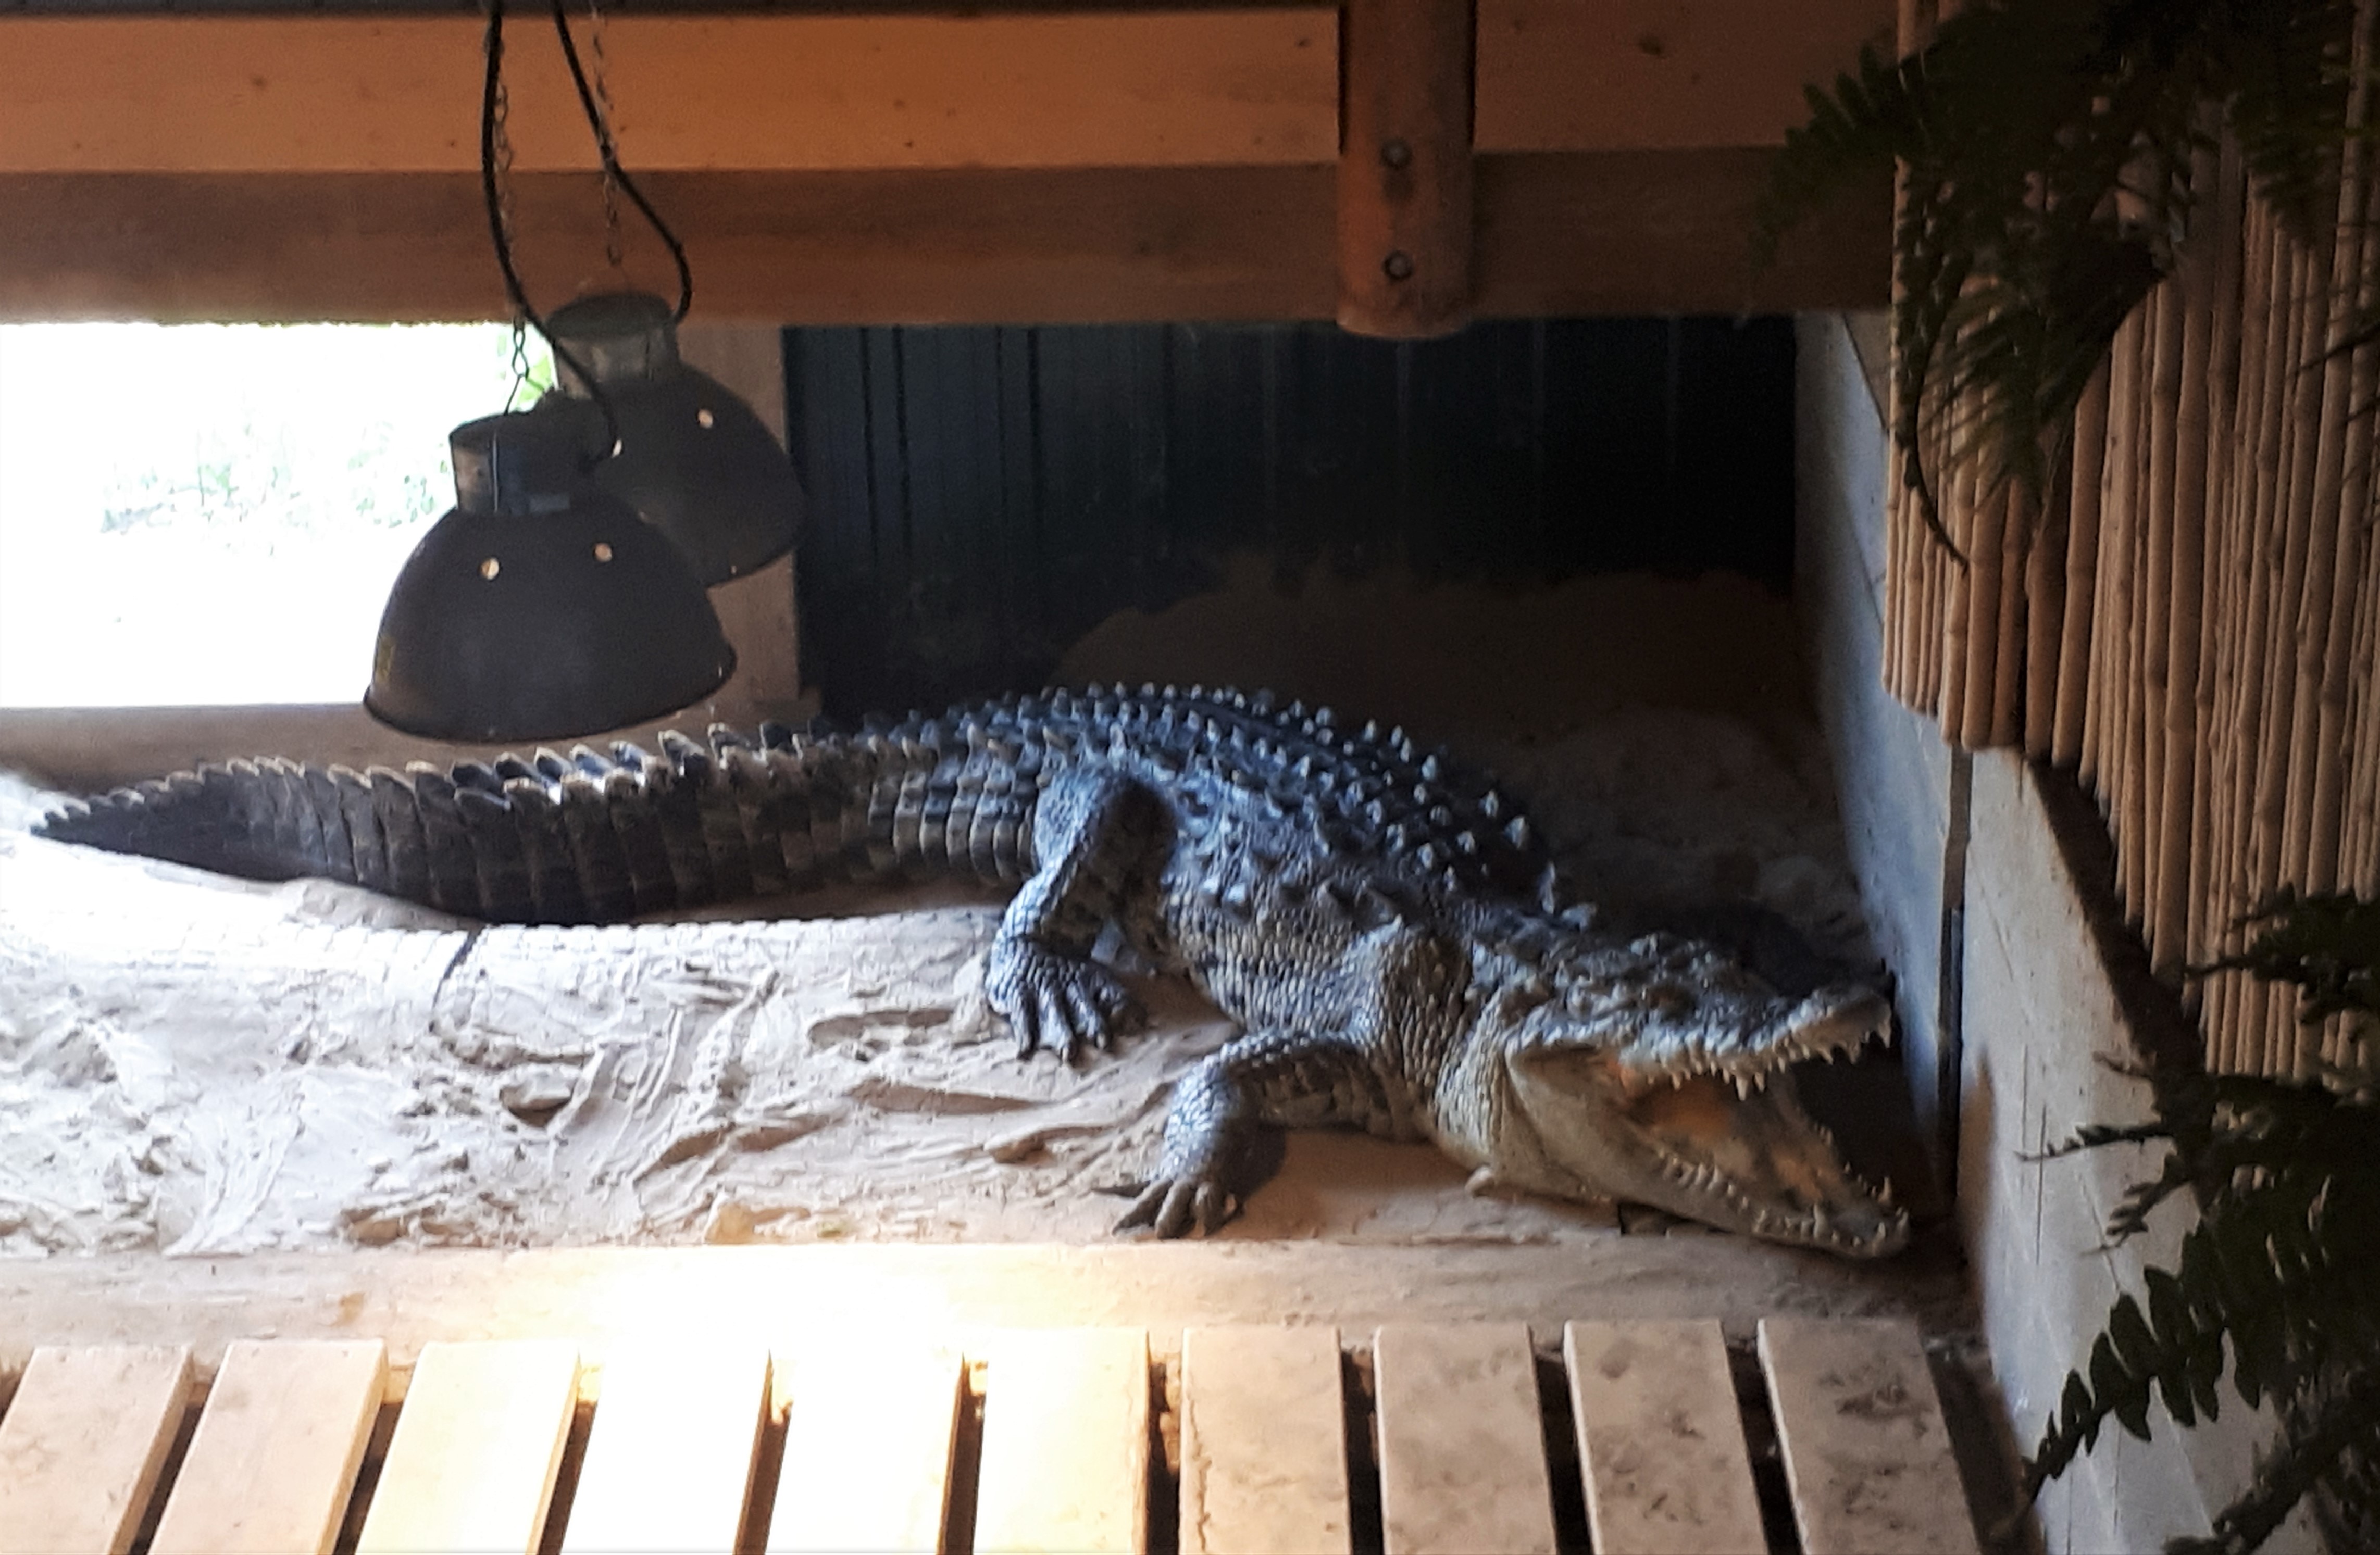 Crocodile at Reptile Zoo, Peterborough, Ontario